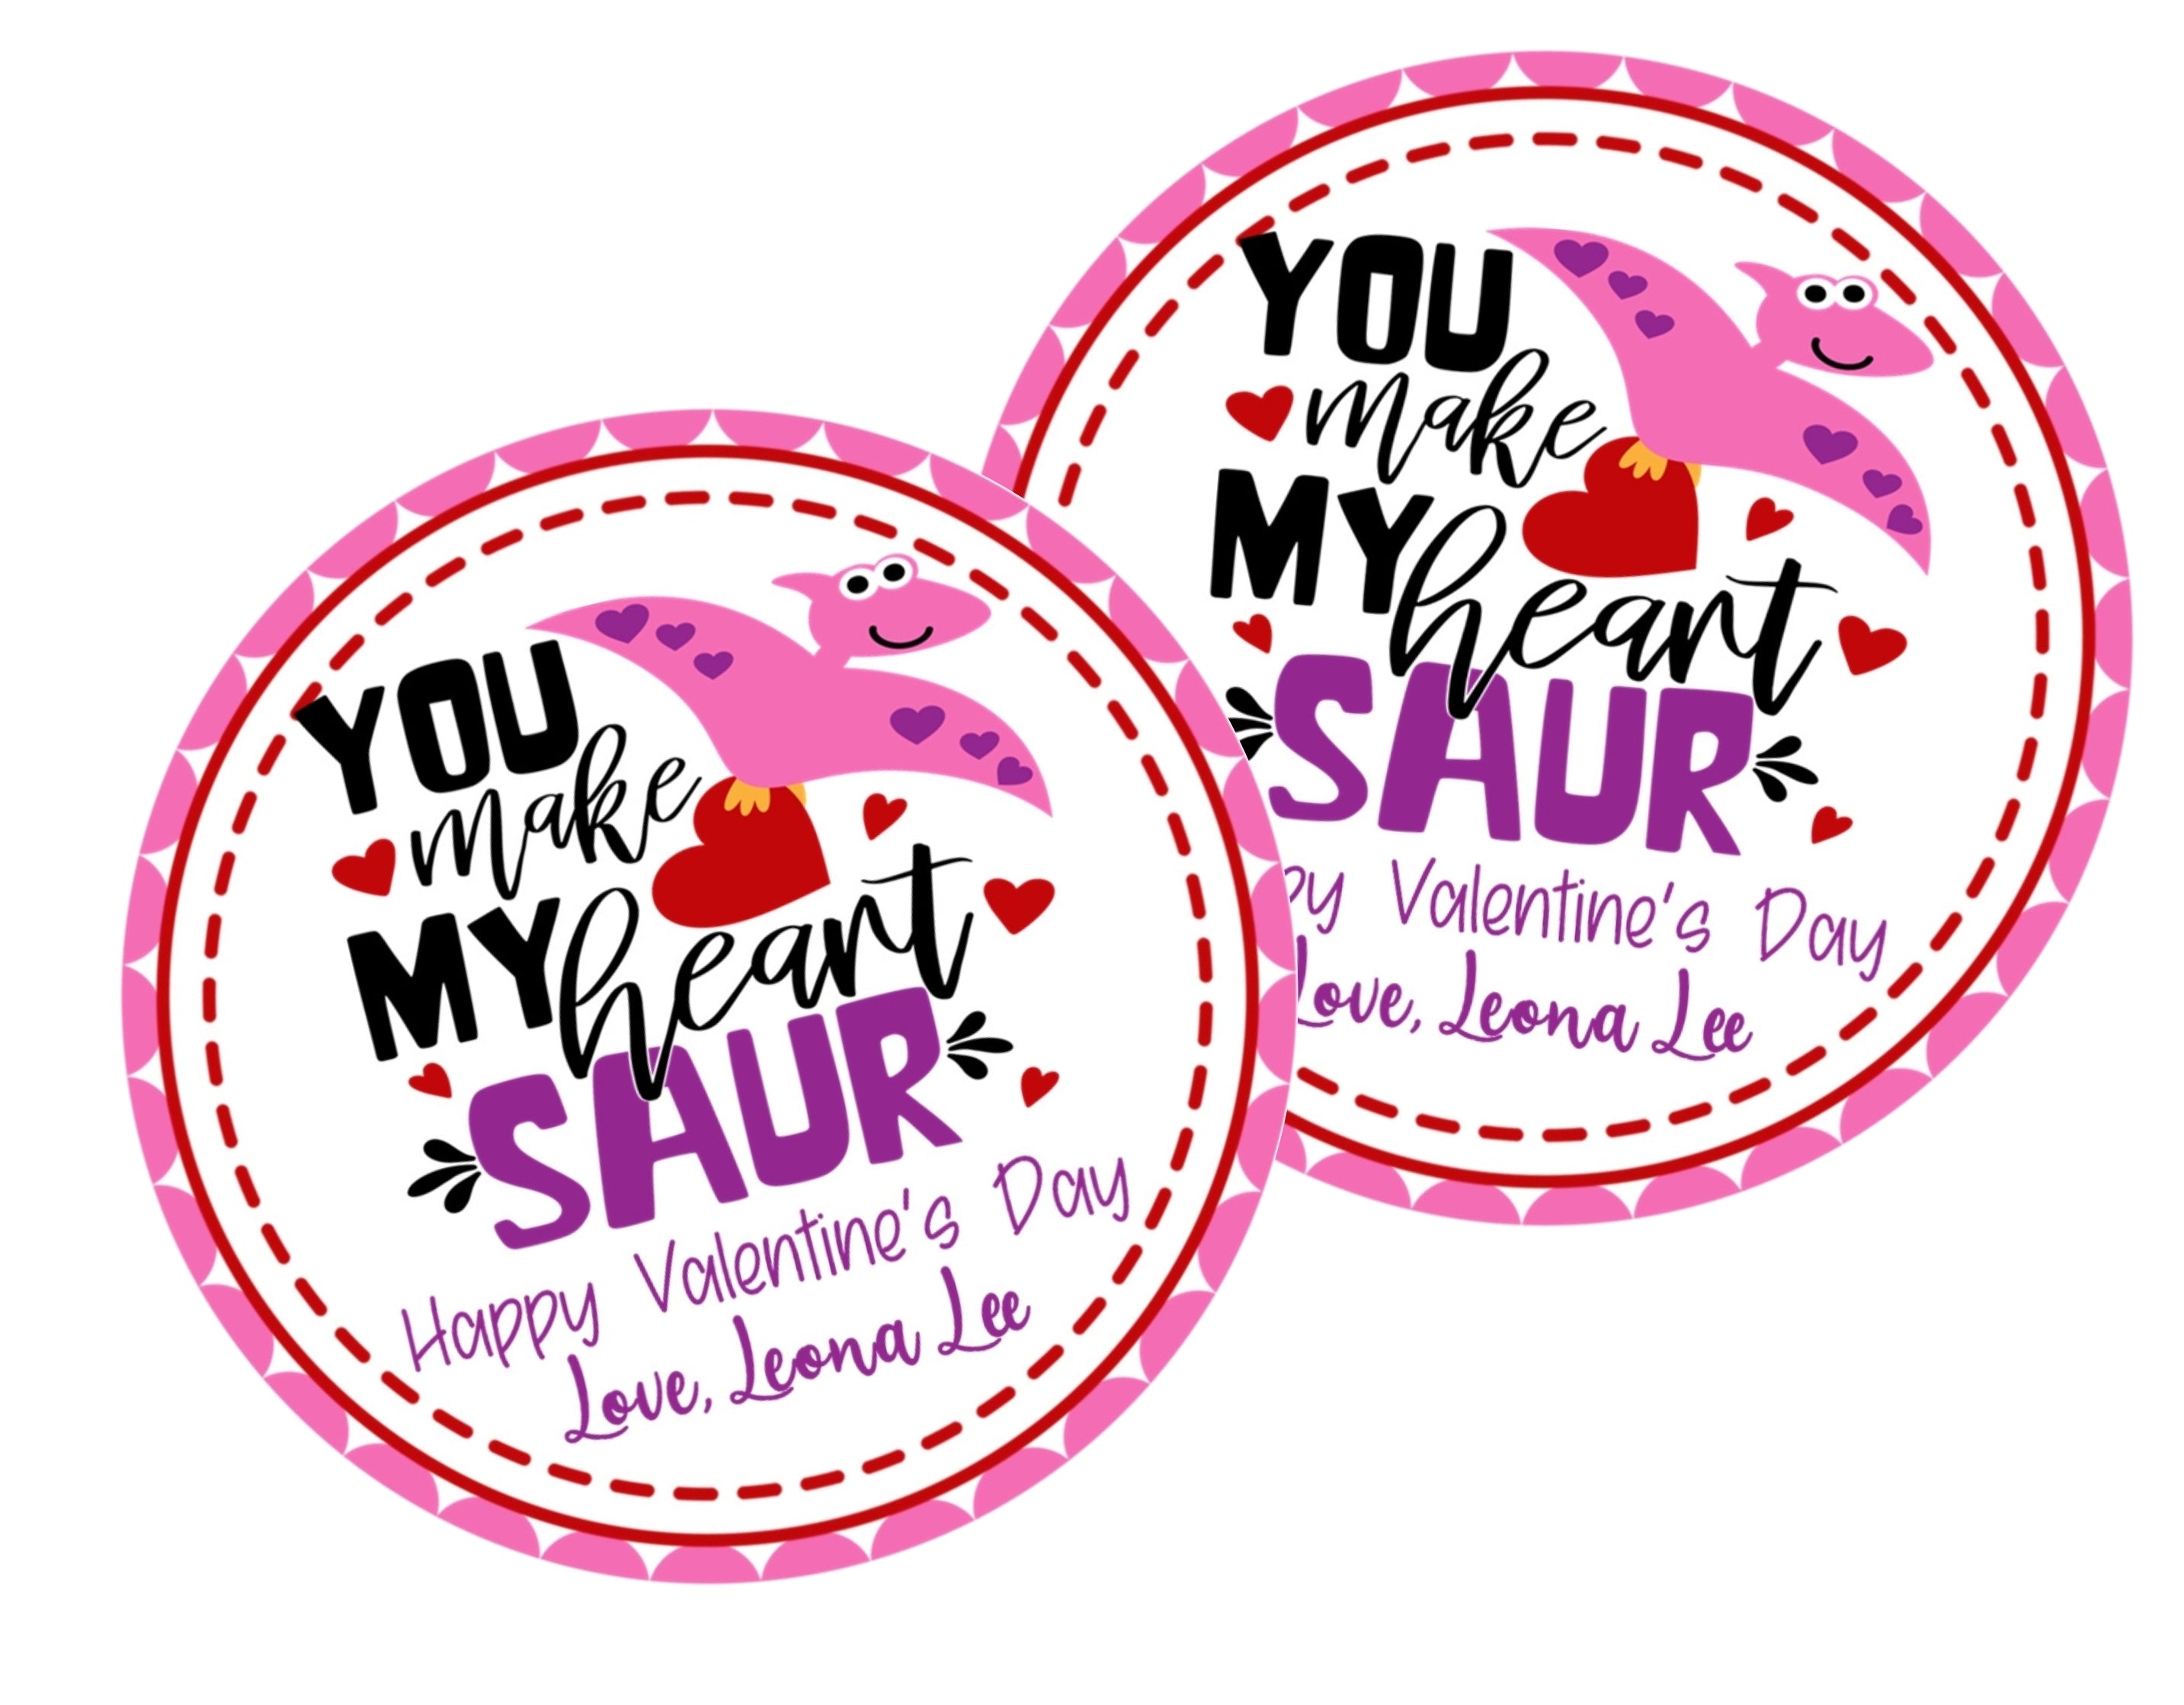 Dinosaur Valentine's Day Stickers